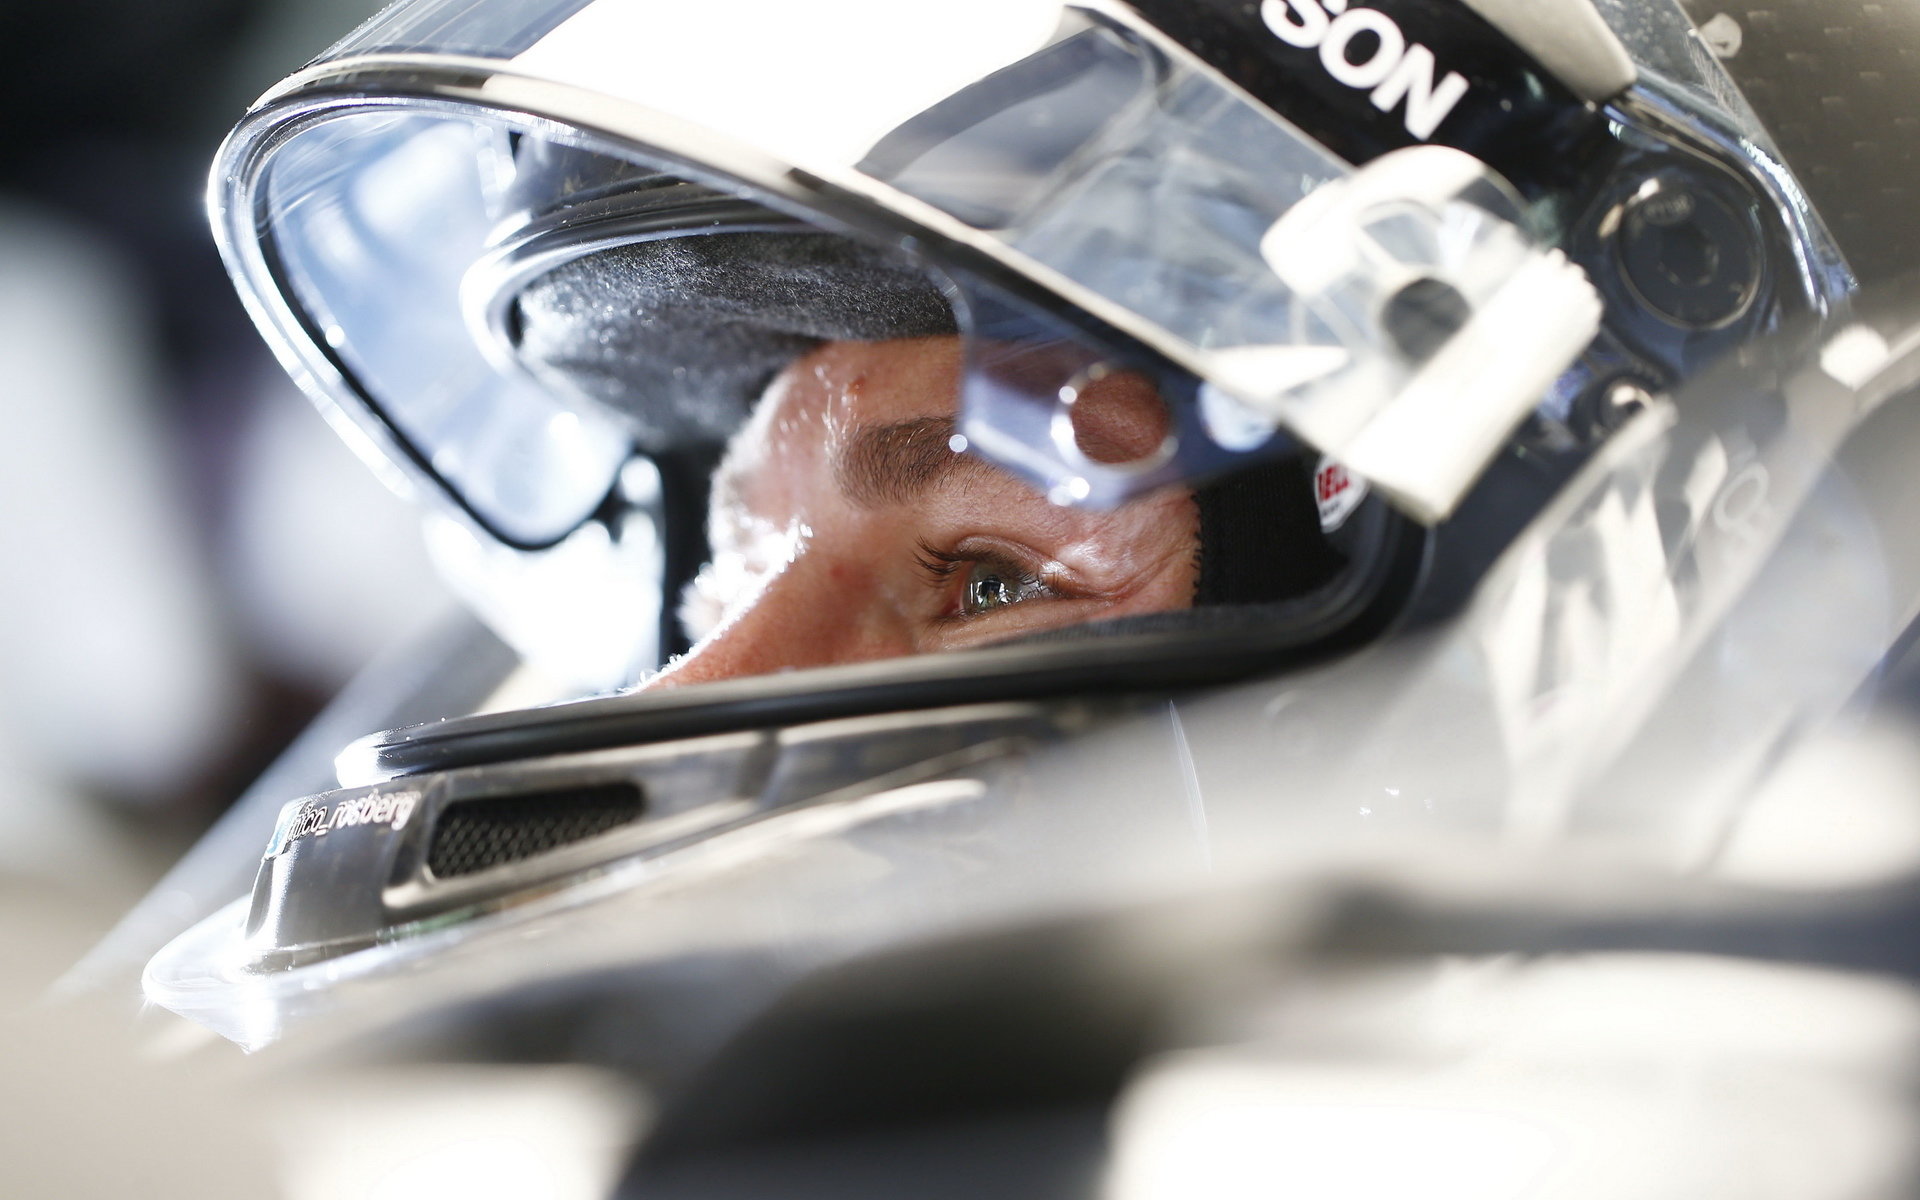 Nico Rosberg při pátečním tréninku v Japonsku zajel nejrychlejší čas